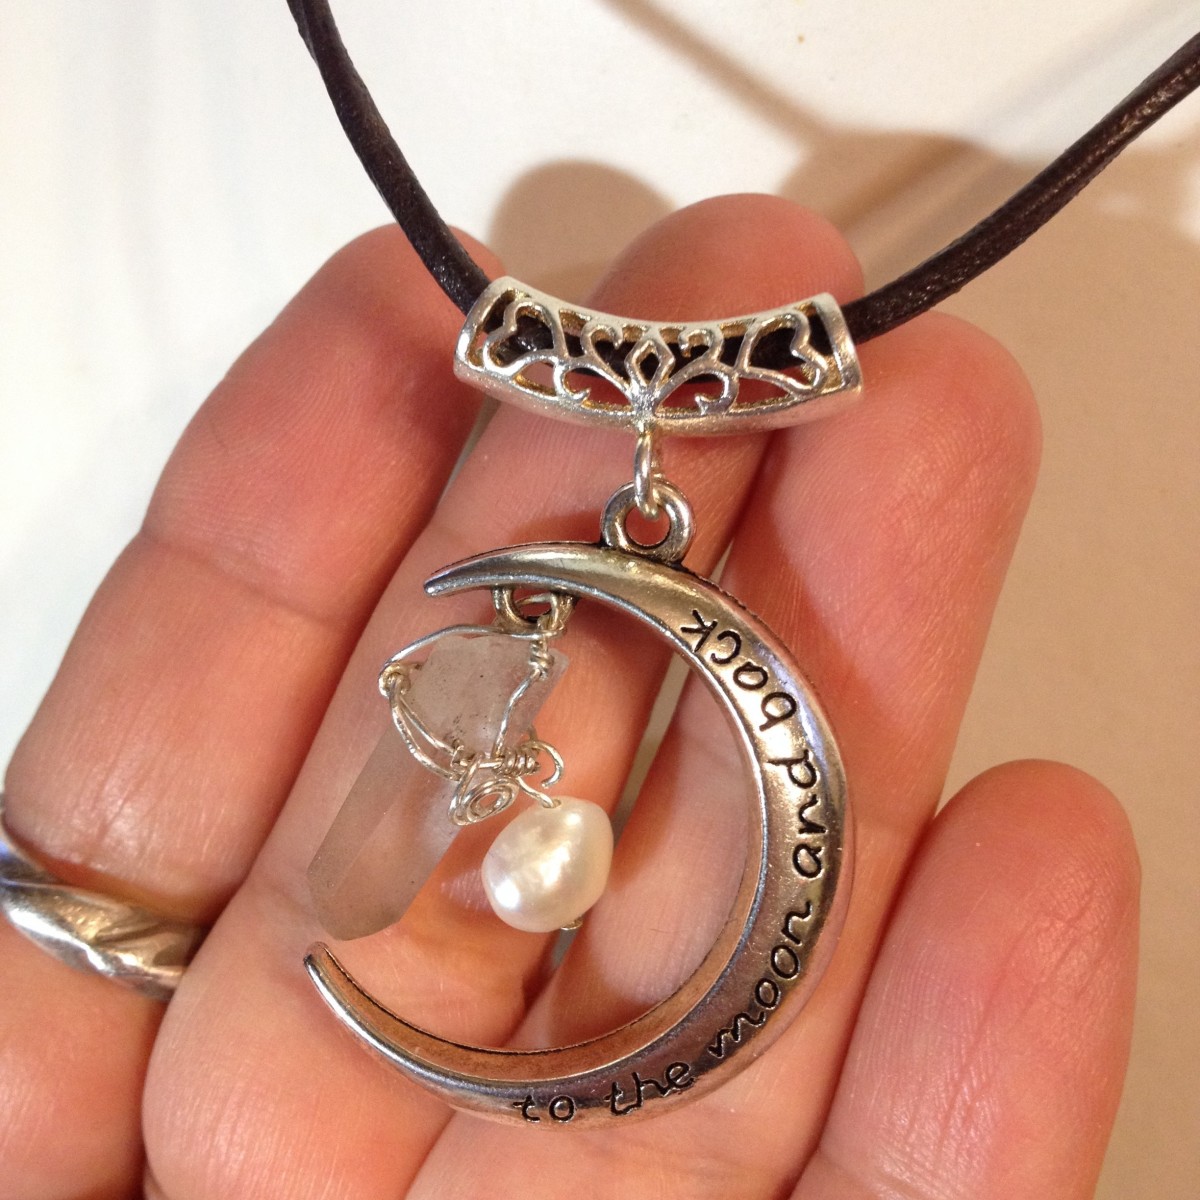 月モチーフ シングルポイント天然水晶と真珠のネックレス Iichi ハンドメイド クラフト作品 手仕事品の通販